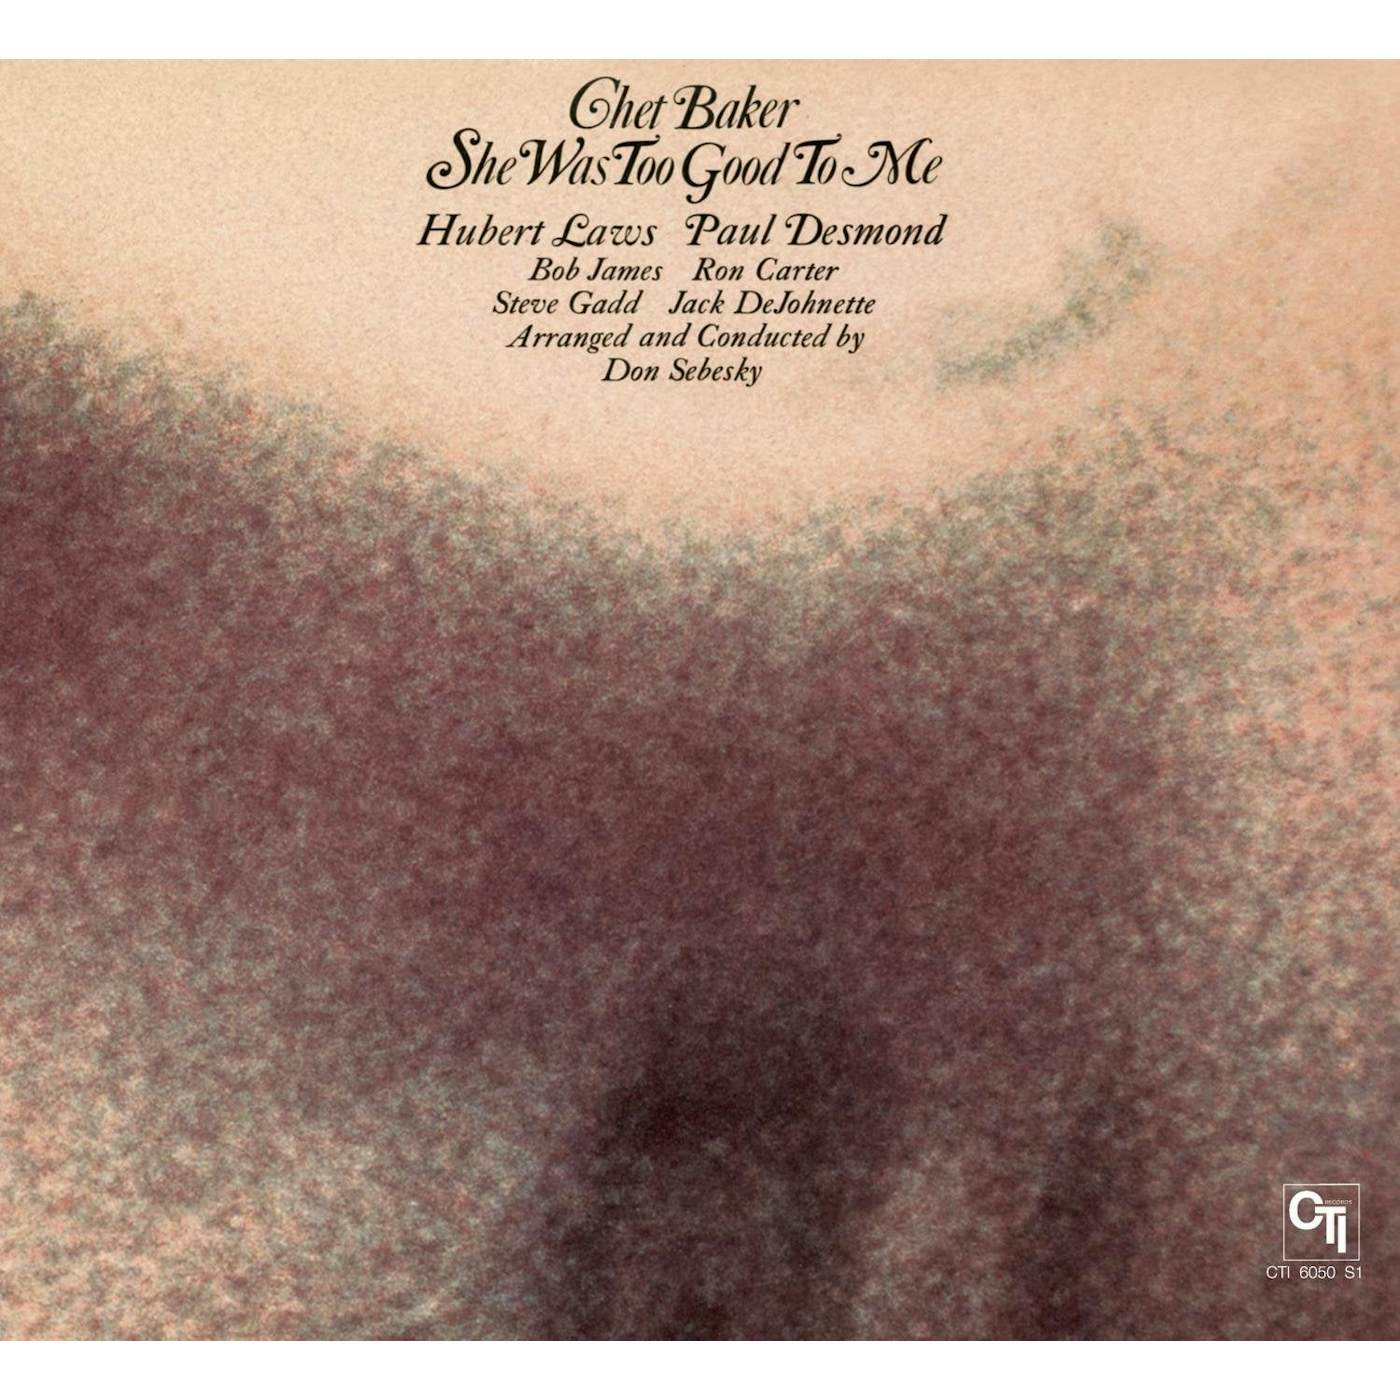 Chet Baker - She Was Too Good To Me (Vinyl)